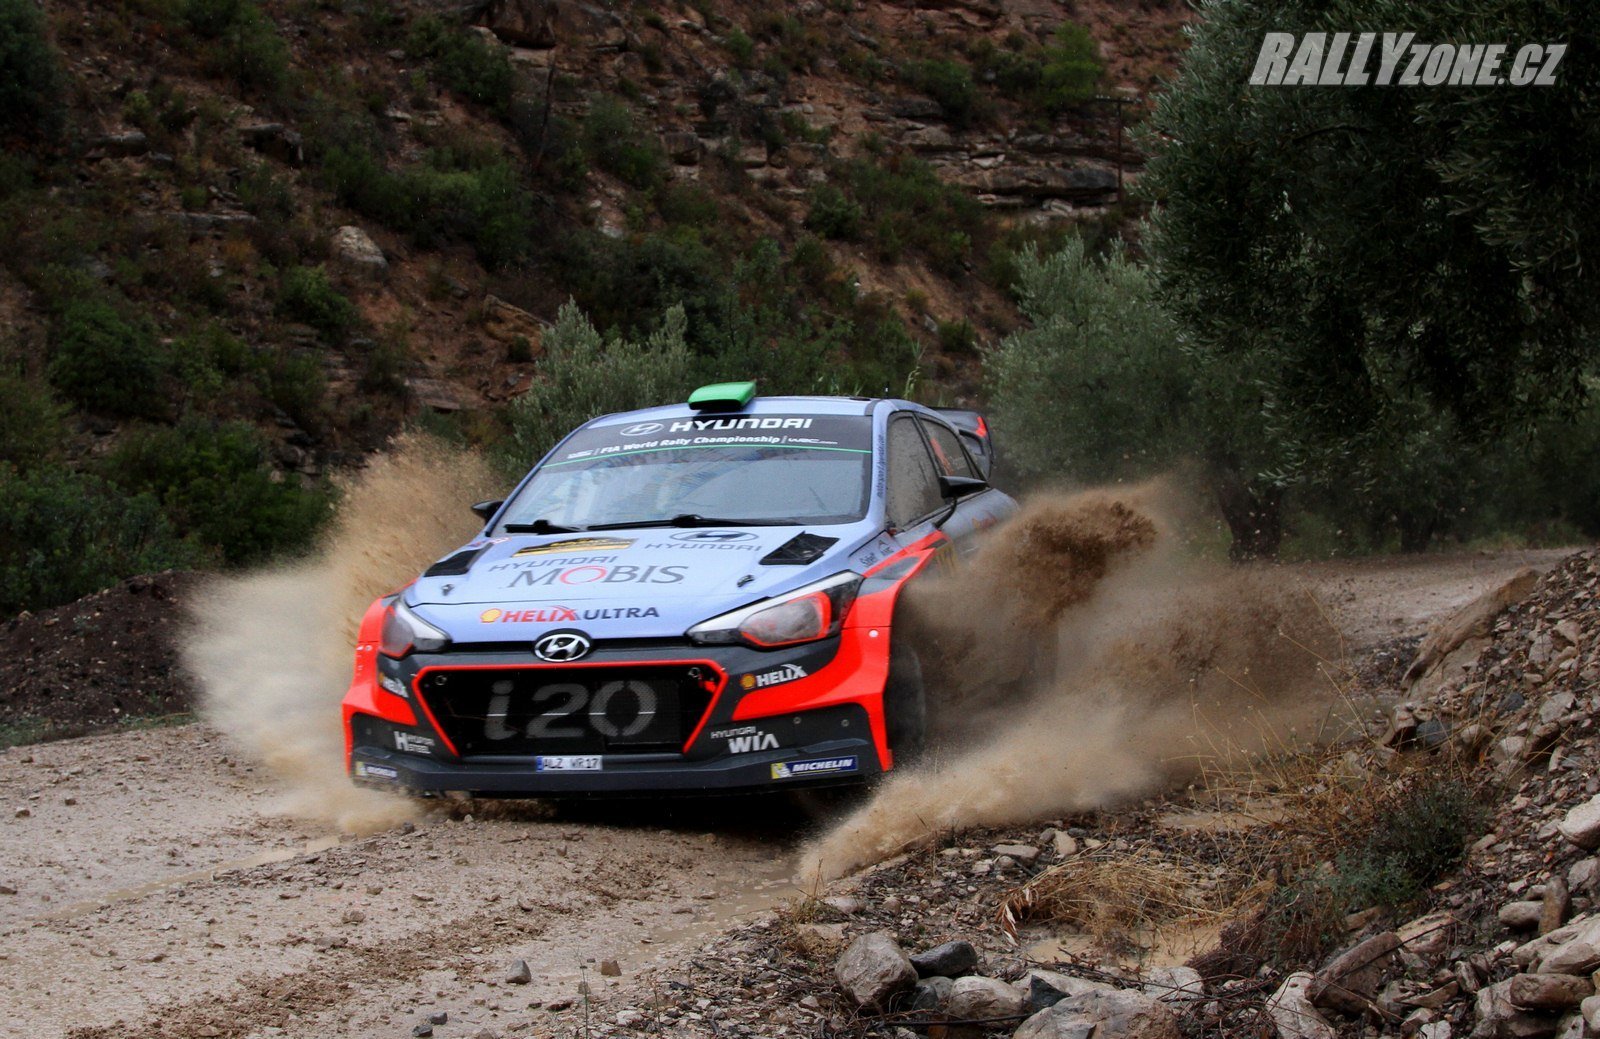 Nová i20 WRC bude vycházet samozřejmě ze stejného sériového auta, ale přesto bude poměrně odlišná od aktuální verze